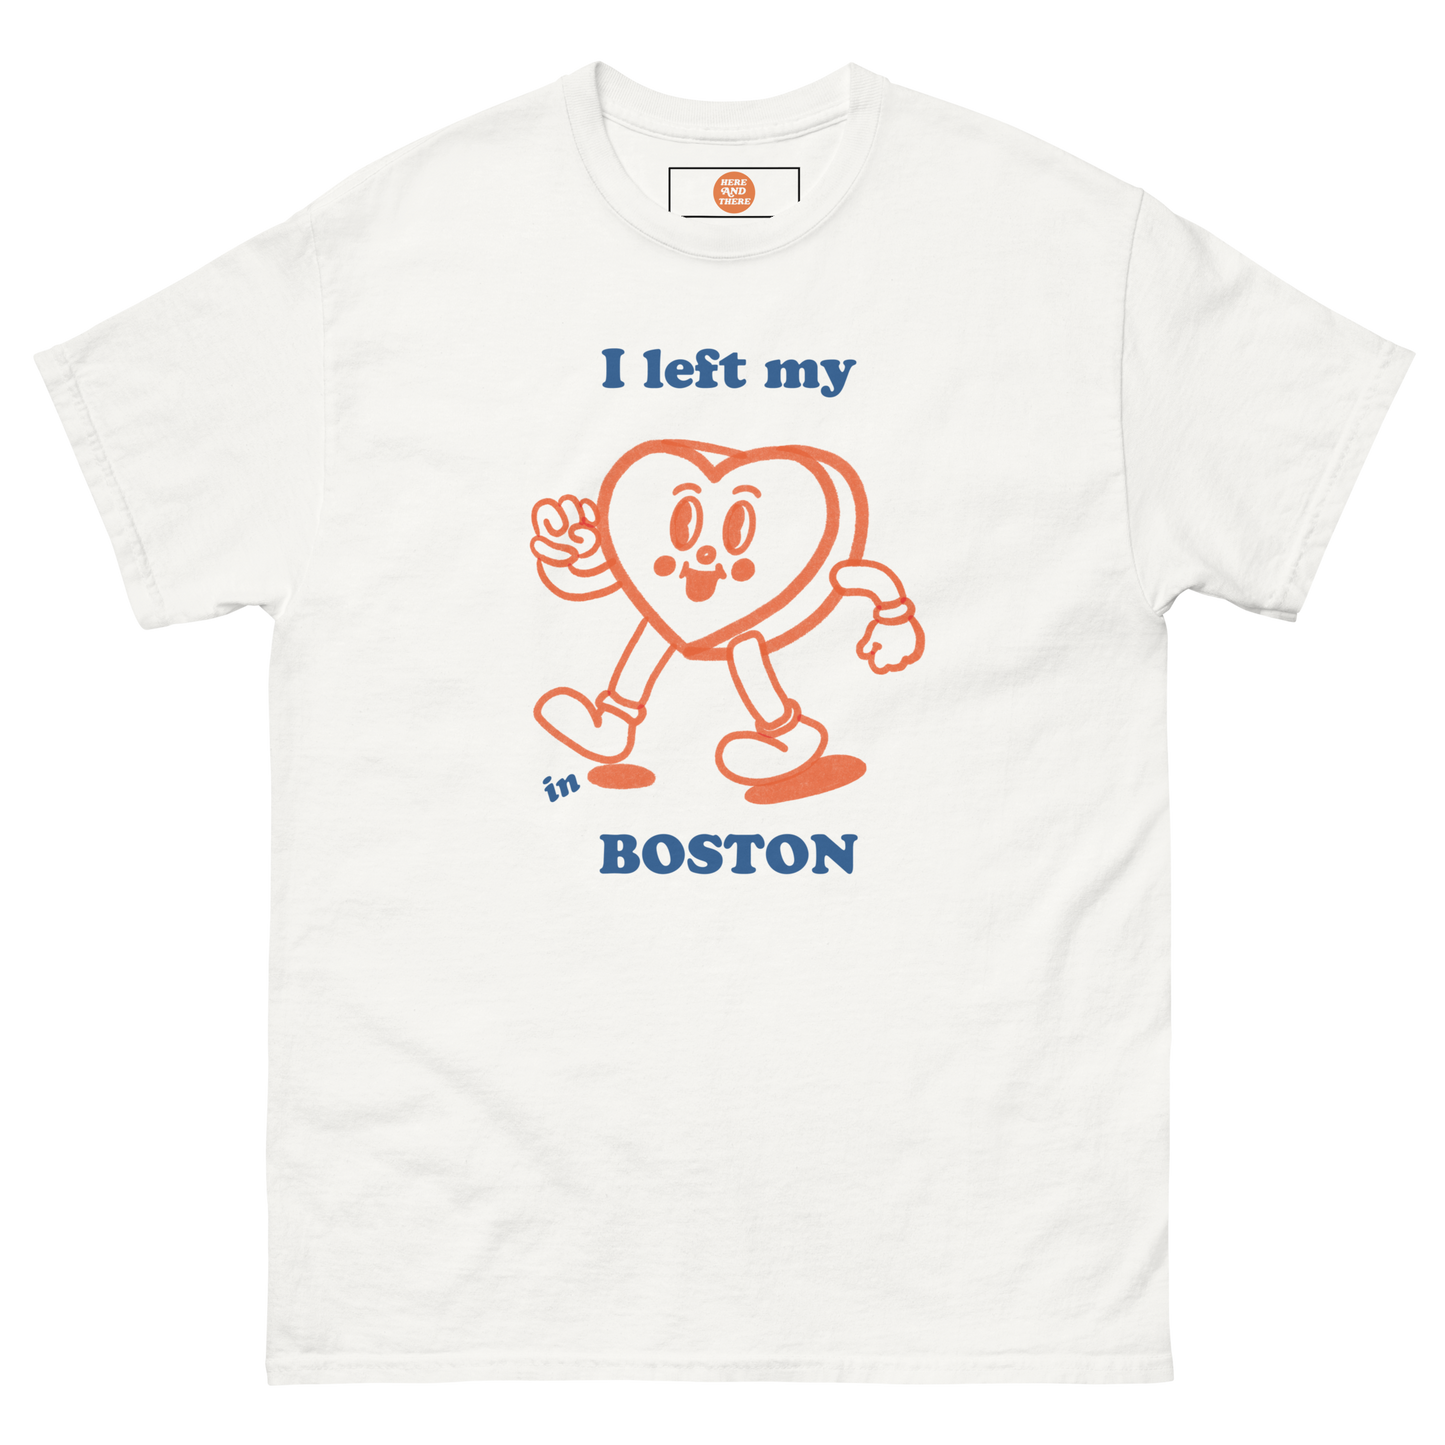 BOSTON + WHITE